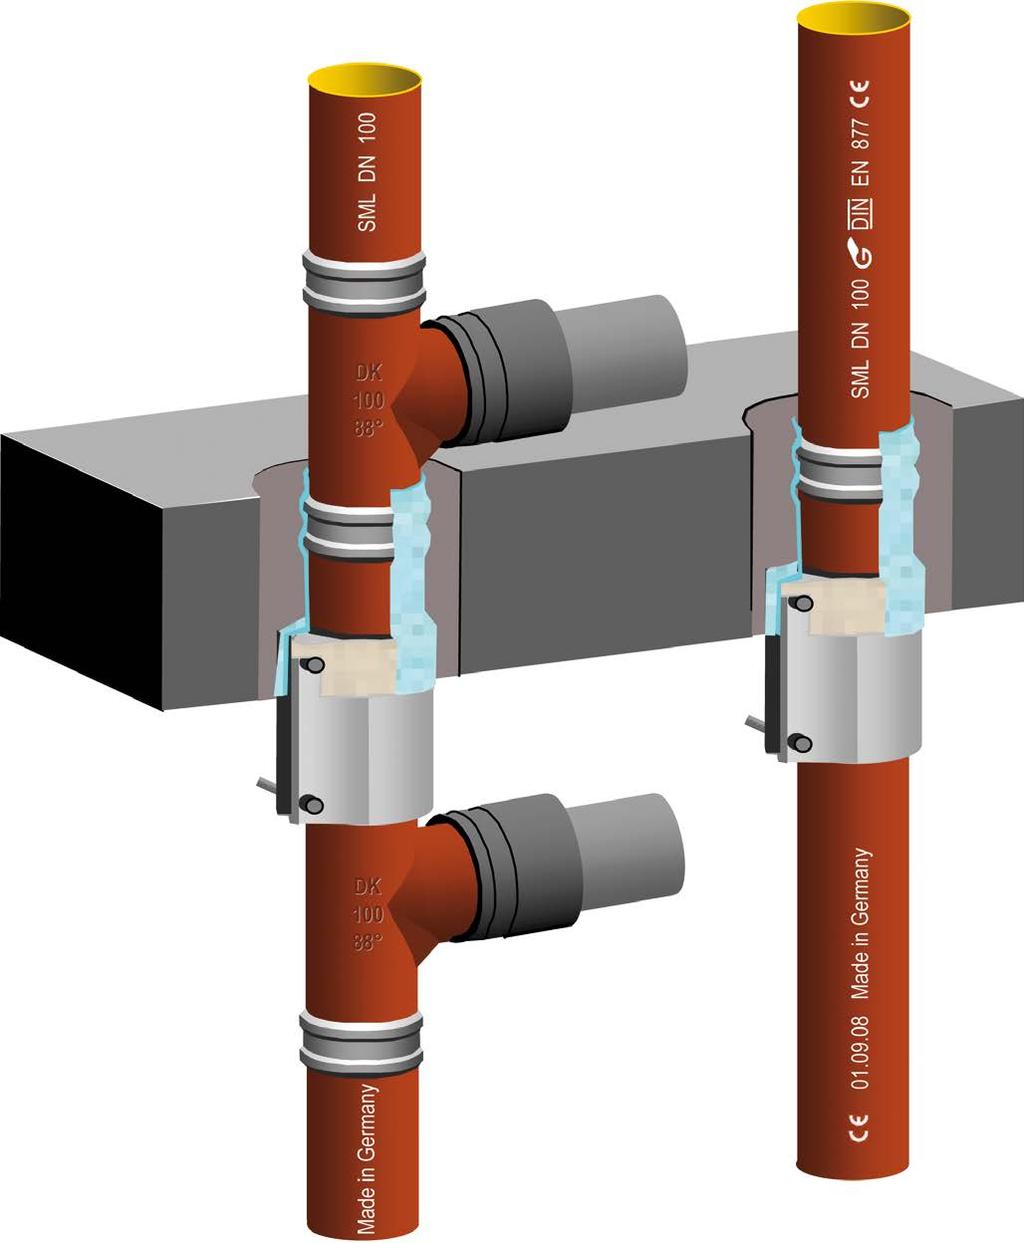 SML-Rohr SML-Rohr Verbinder 20 40 mm in die Decke einbauen Beton bzw.